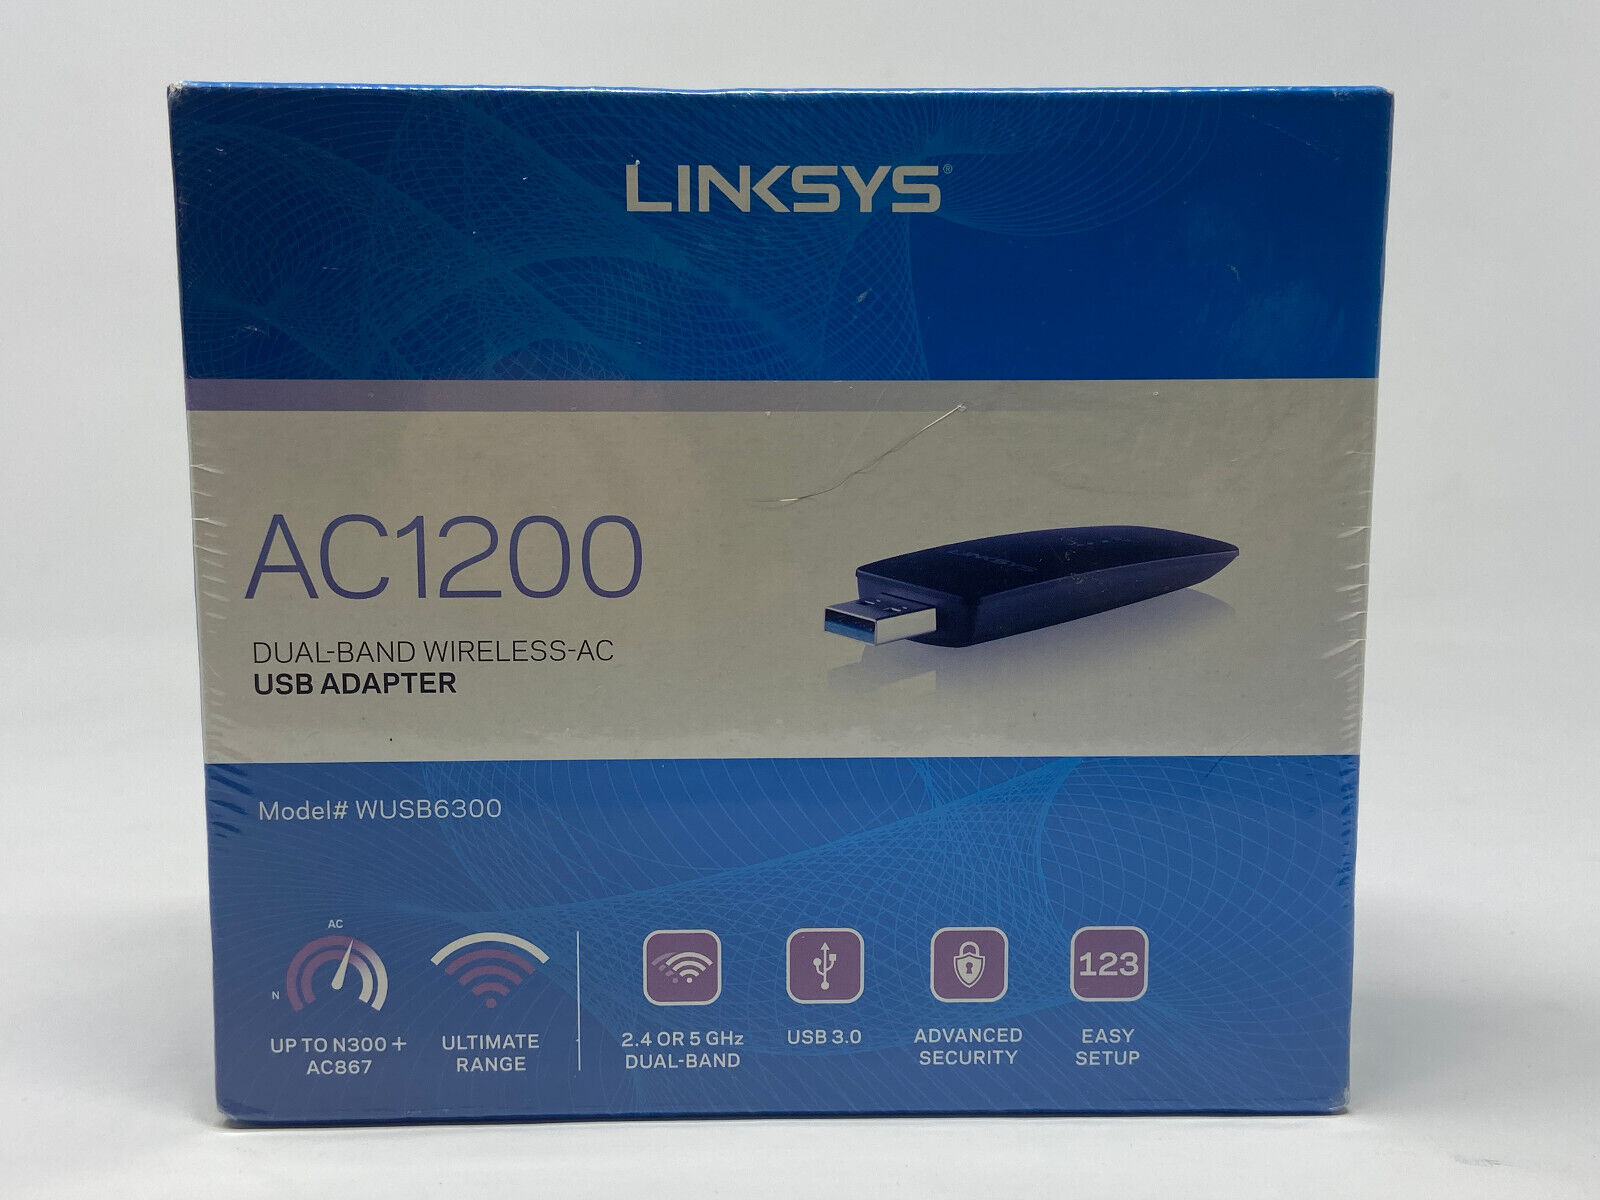 Linksys Dual-Band AC1200 Wireless Adapter USB 3.0 WUSB6300 BRAND NEW SHRINKWRAP